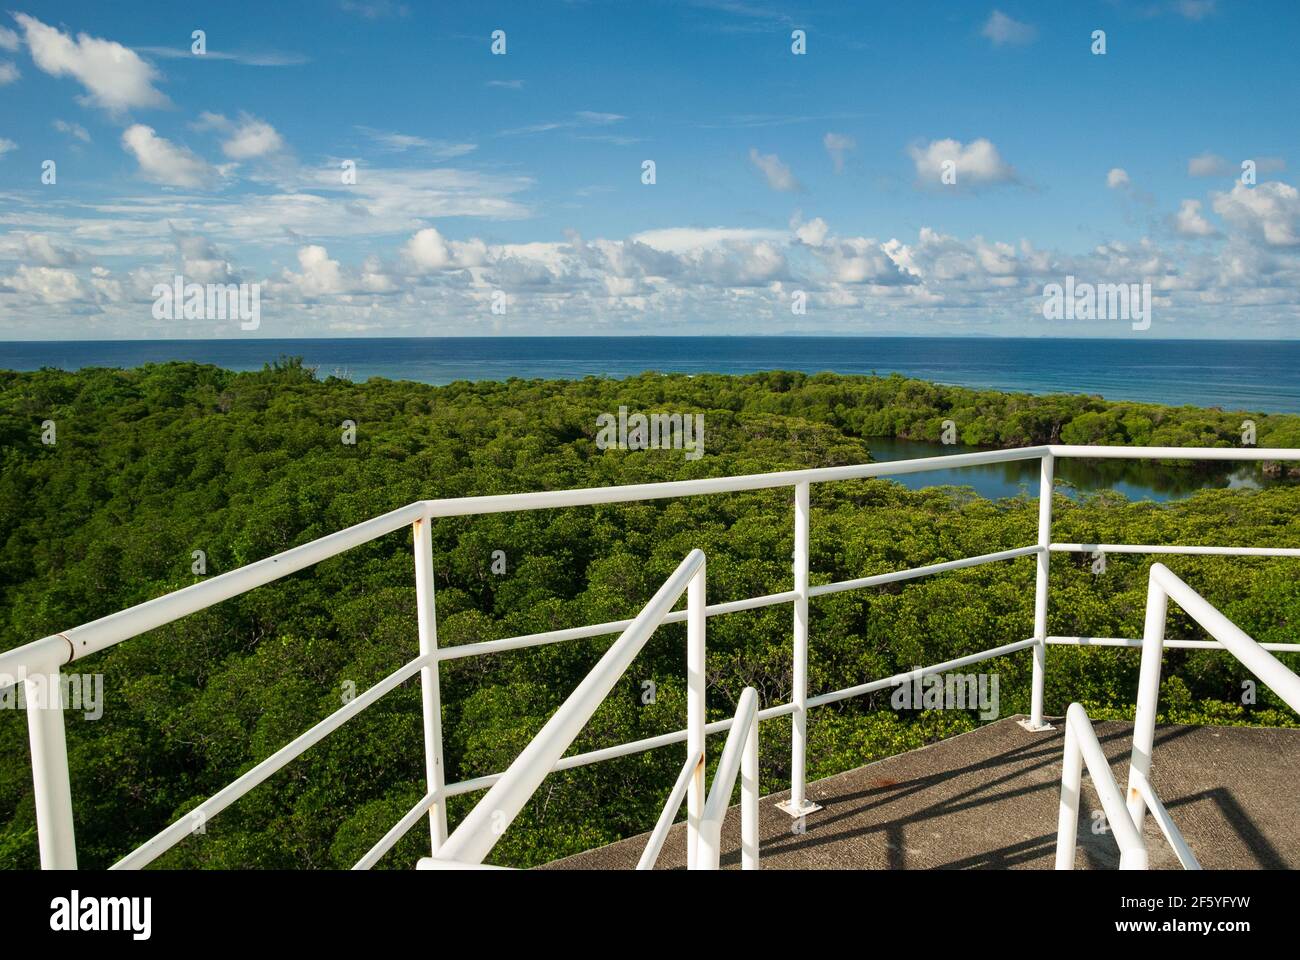 Draufsicht Aufnahme eines Mangrovenwaldes mit einer Lagune irgendwo mitten im Meer. Die herrliche Aussicht ist unter blauem bewölktem Himmel in der Mitte von t Stockfoto